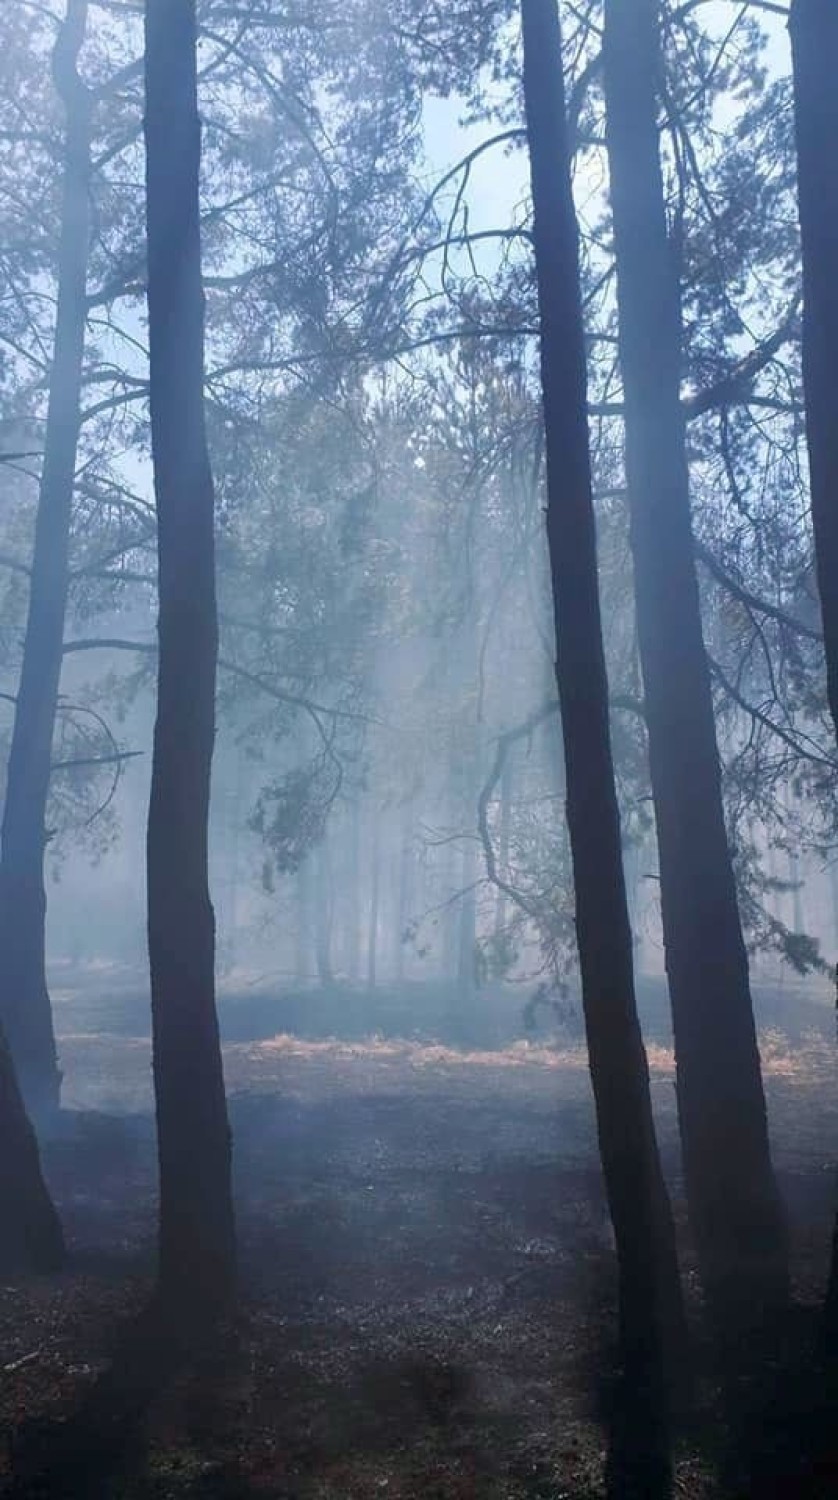 Duży pożar lasu i nieużytków w powiecie wieluńskim. Ogień gasiło 19 jednostek straży [FOTO]